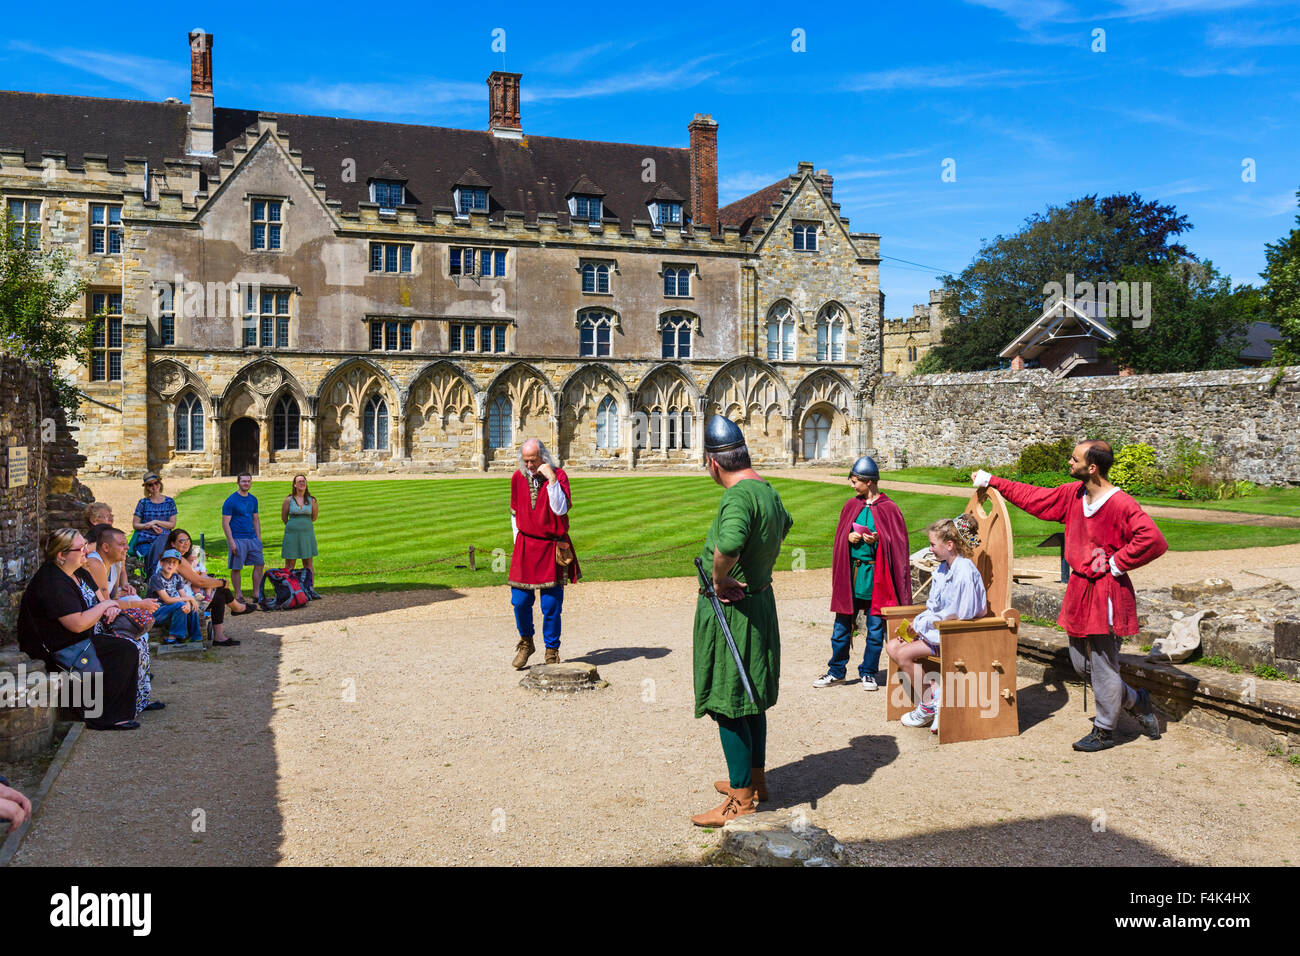 Besucher Participatiing in Reenactment vor des Abtes Great Hall (heute eine Schule) an der Battle Abbey, E Sussex, UK Stockfoto